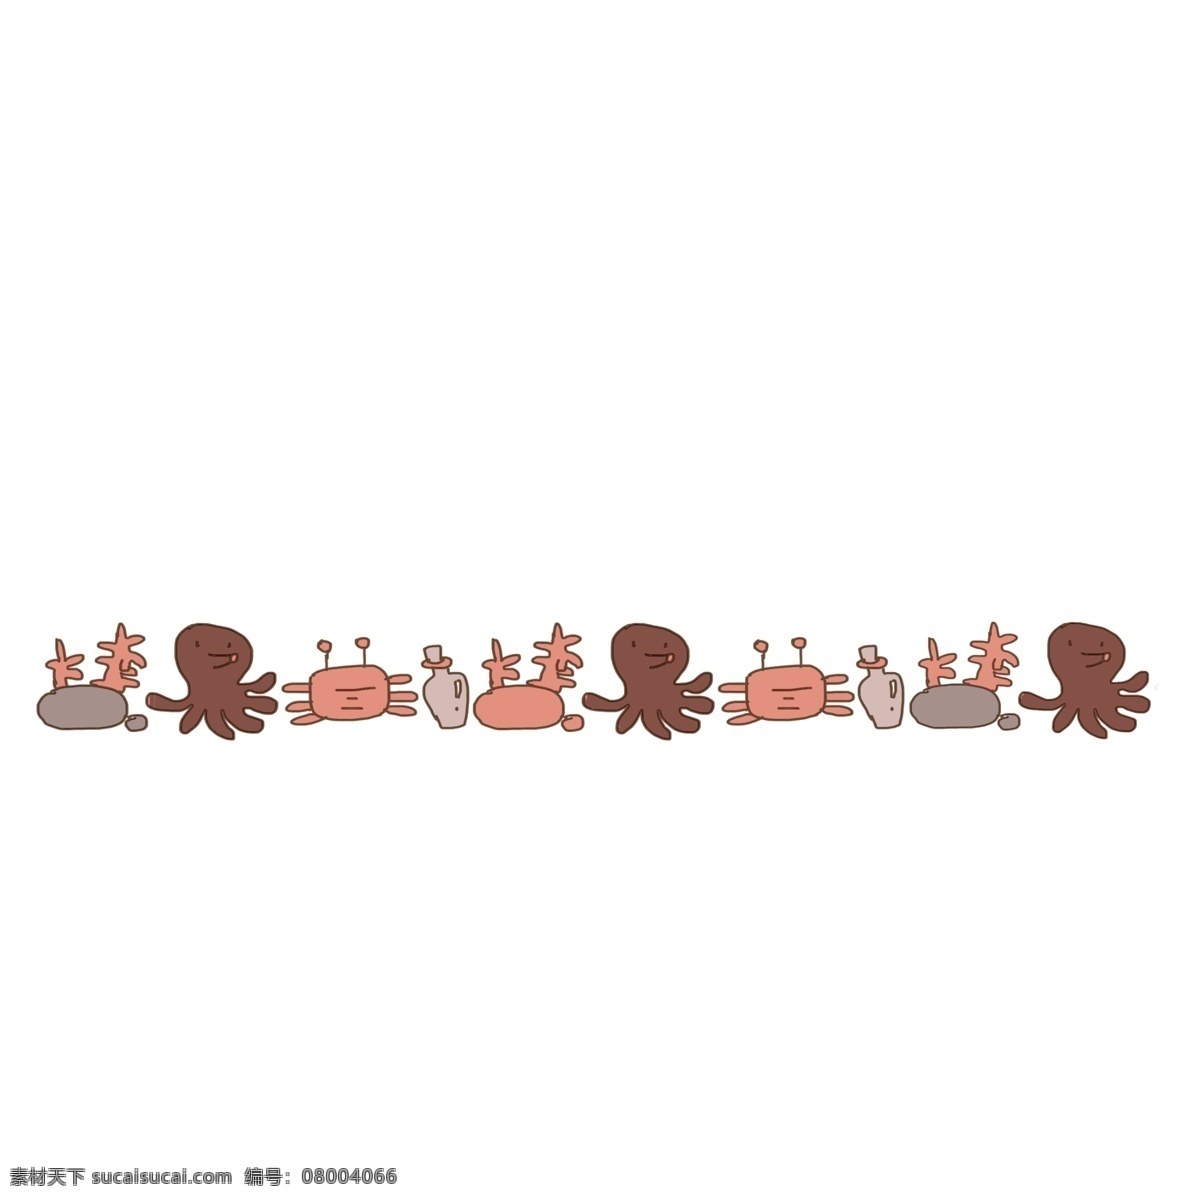 海洋生物 分割线 插画 动物分割线 生物分割线 分割线插画 卡通分割线 章鱼和螃蟹 创意分割线